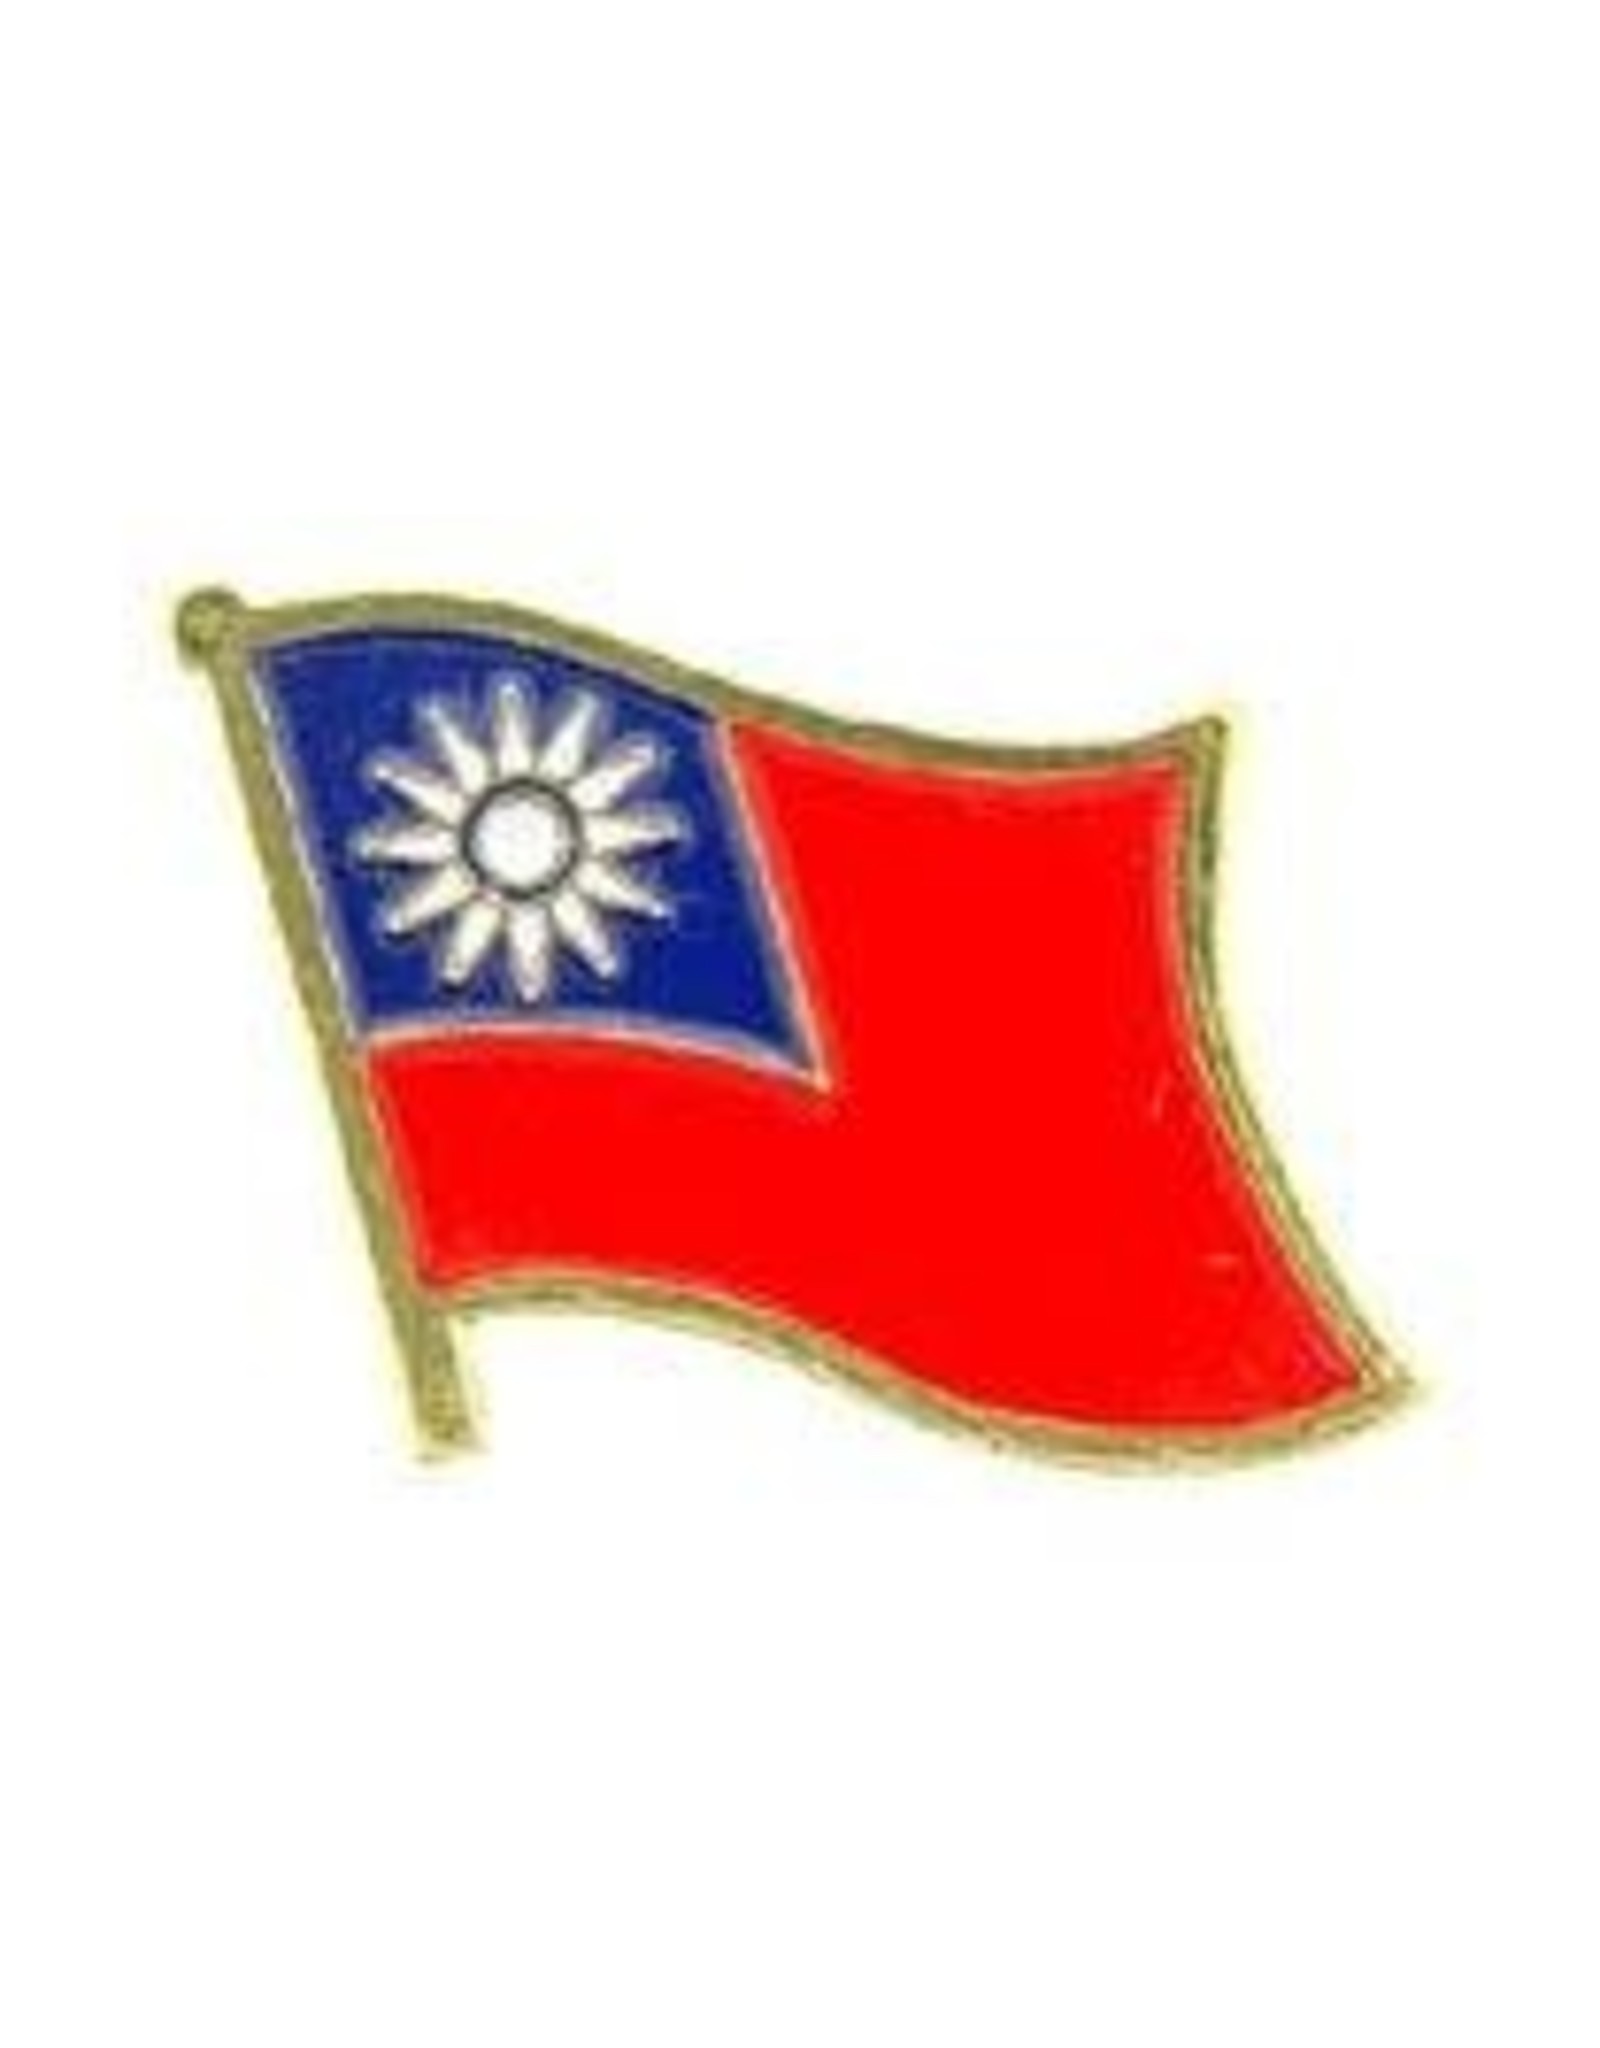 Pin - Taiwan Flag